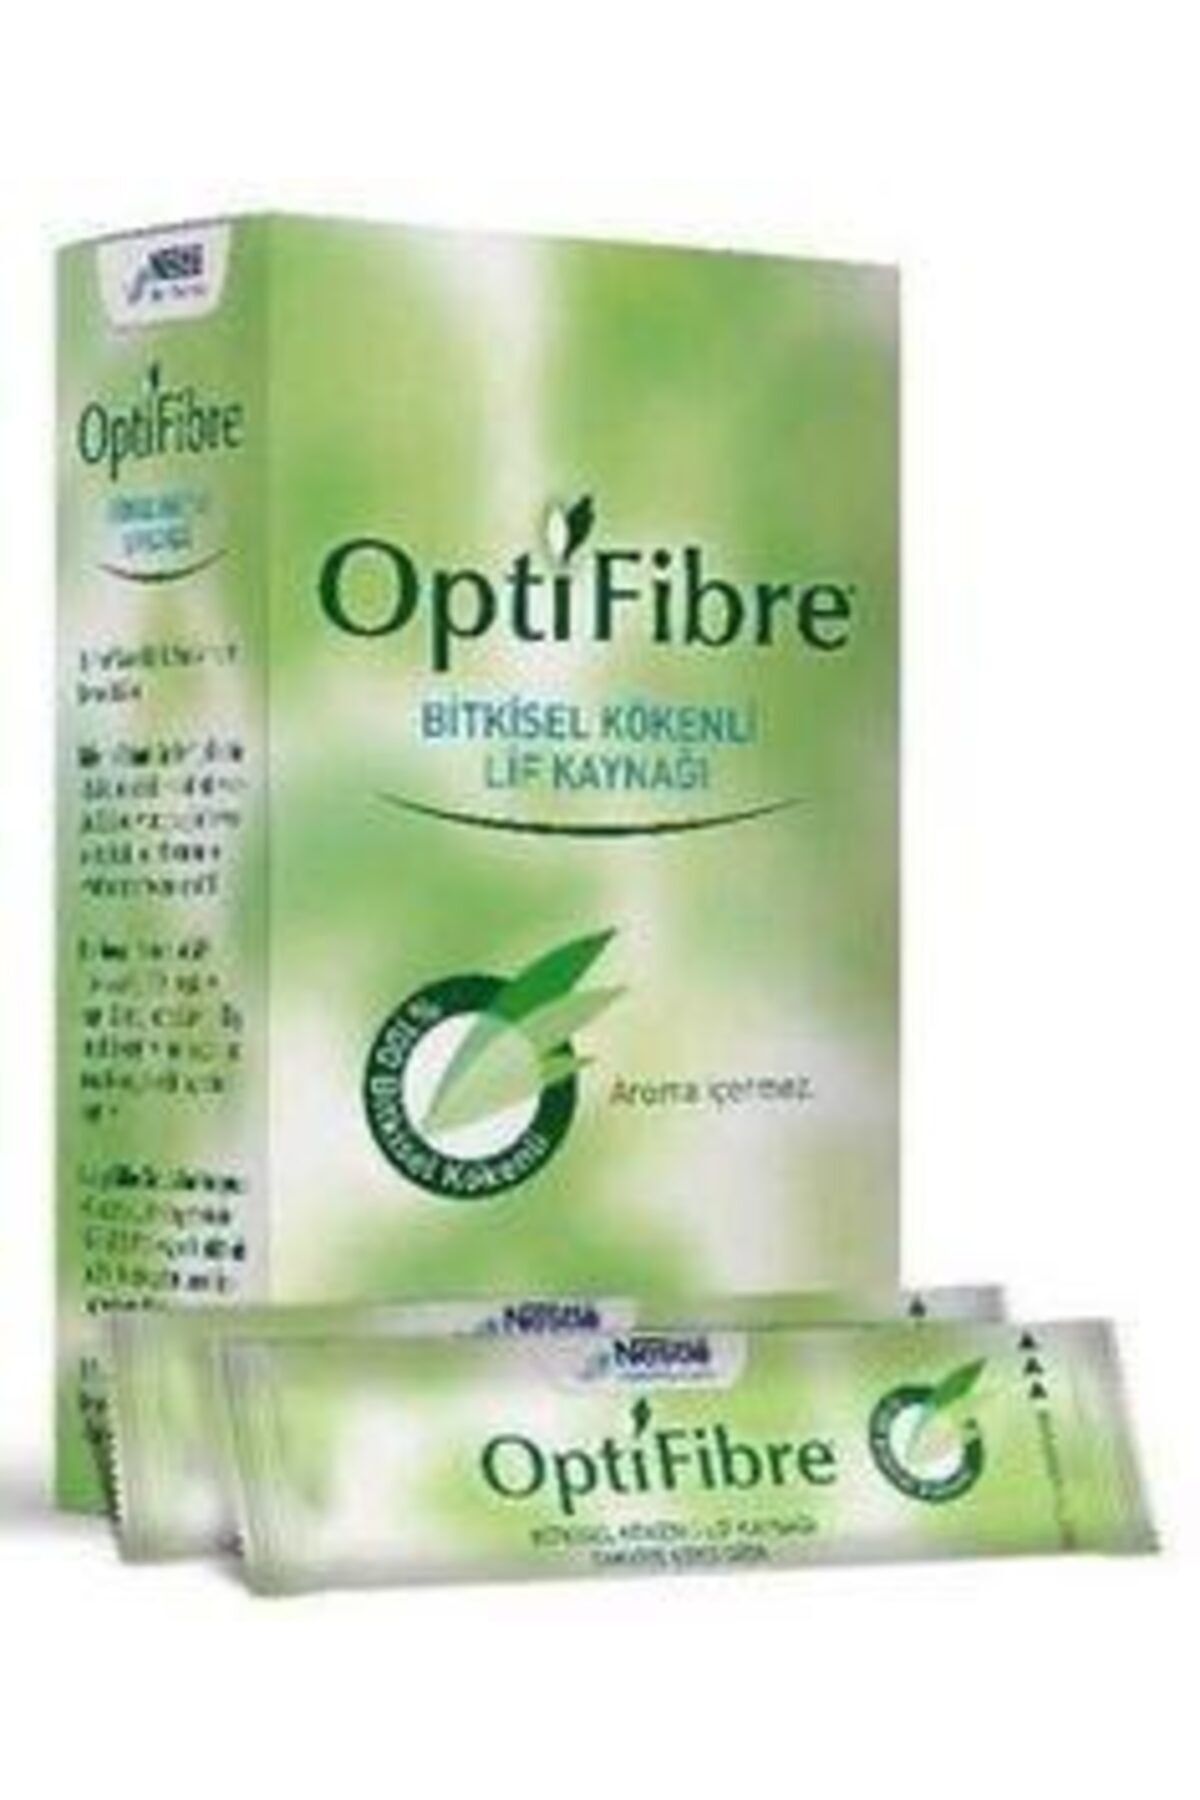 OptiFibre Optifibre Bitkisel Kökenli Lif Kaynağı